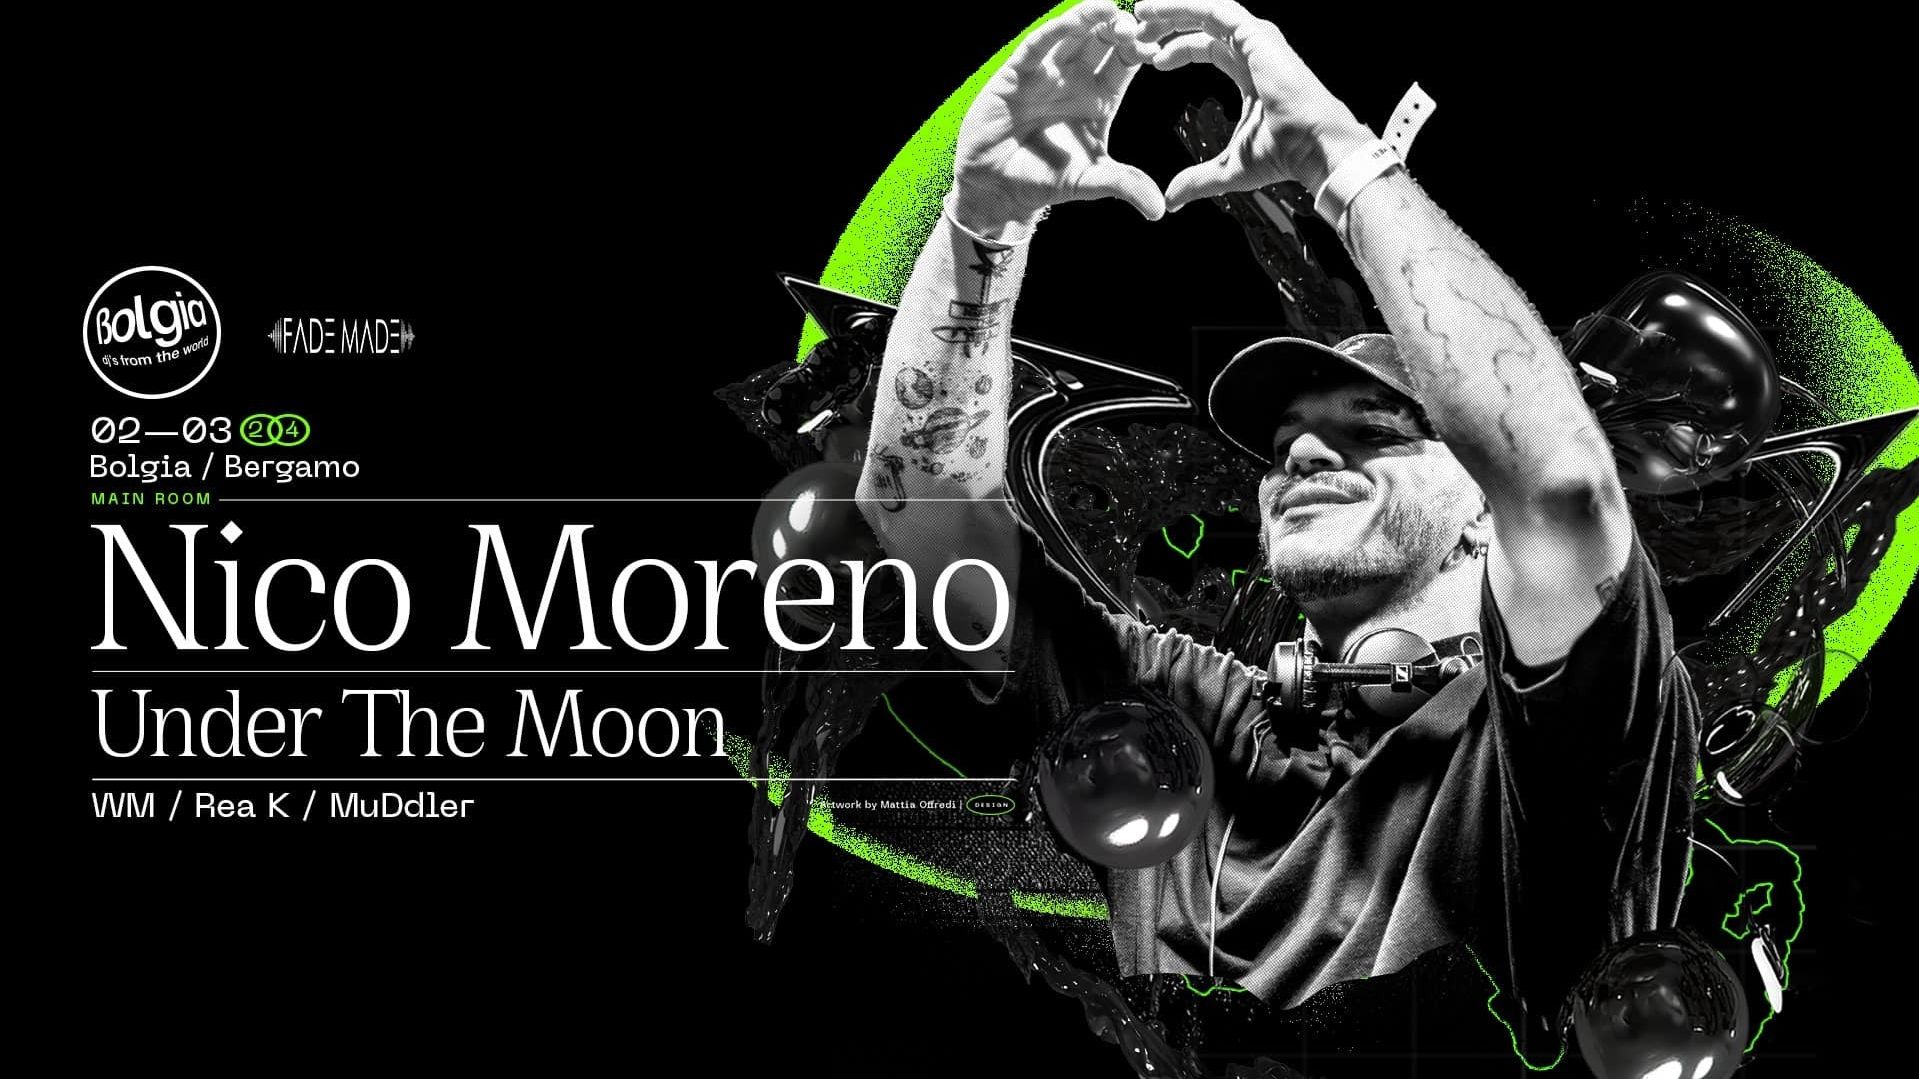 Nico Moreno + Under The Moon